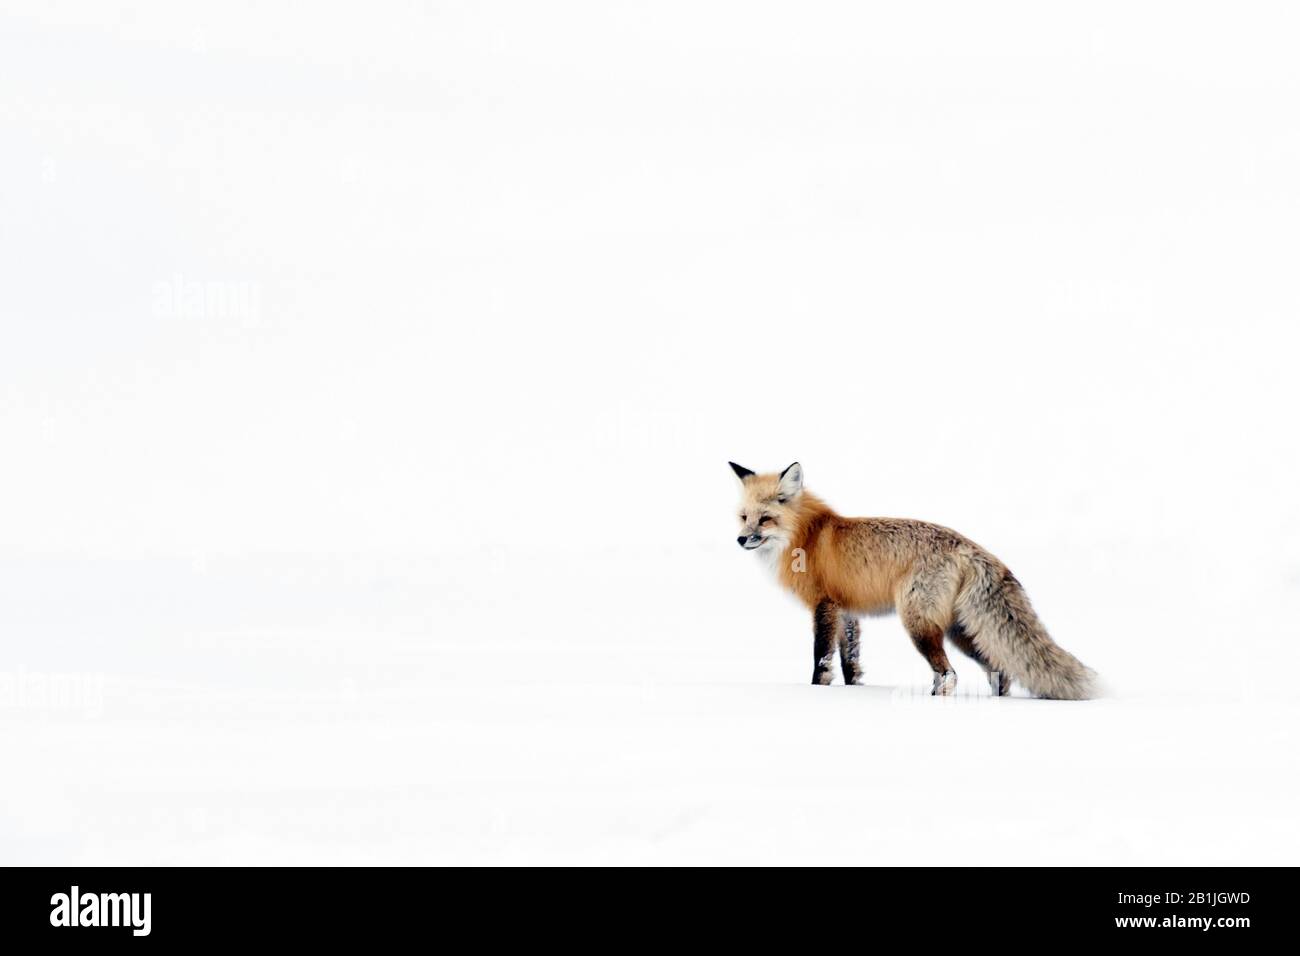 Le renard rouge (Vulpes vulpes) se trouve dans le parc national de Yellowstone, couvert de neige, aux États-Unis, au Wyoming, dans le parc national de Yellowstone Banque D'Images